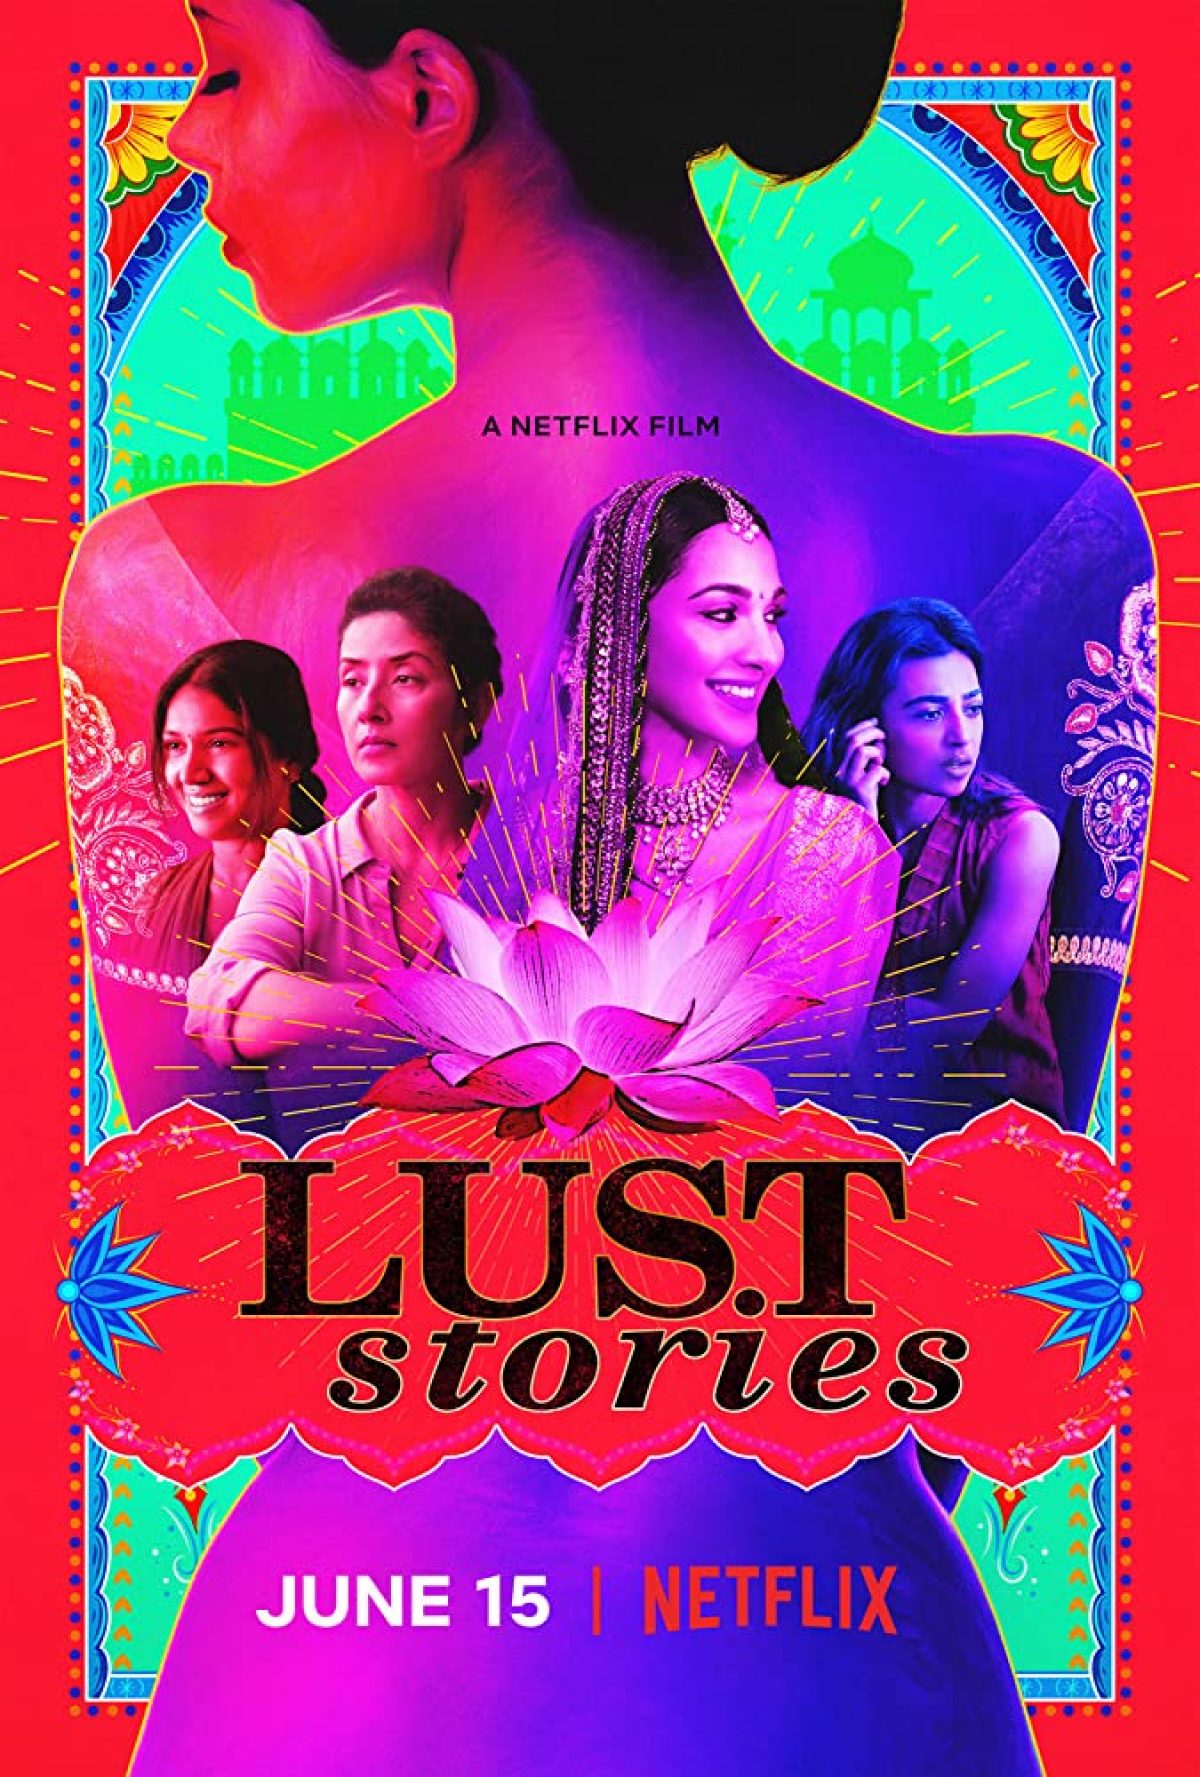 ดูหนังออนไลน์ฟรี Lust Stories – Netflix 2018 เรื่องรัก เรื่องใคร่ เว็บดูหนังชนโรง